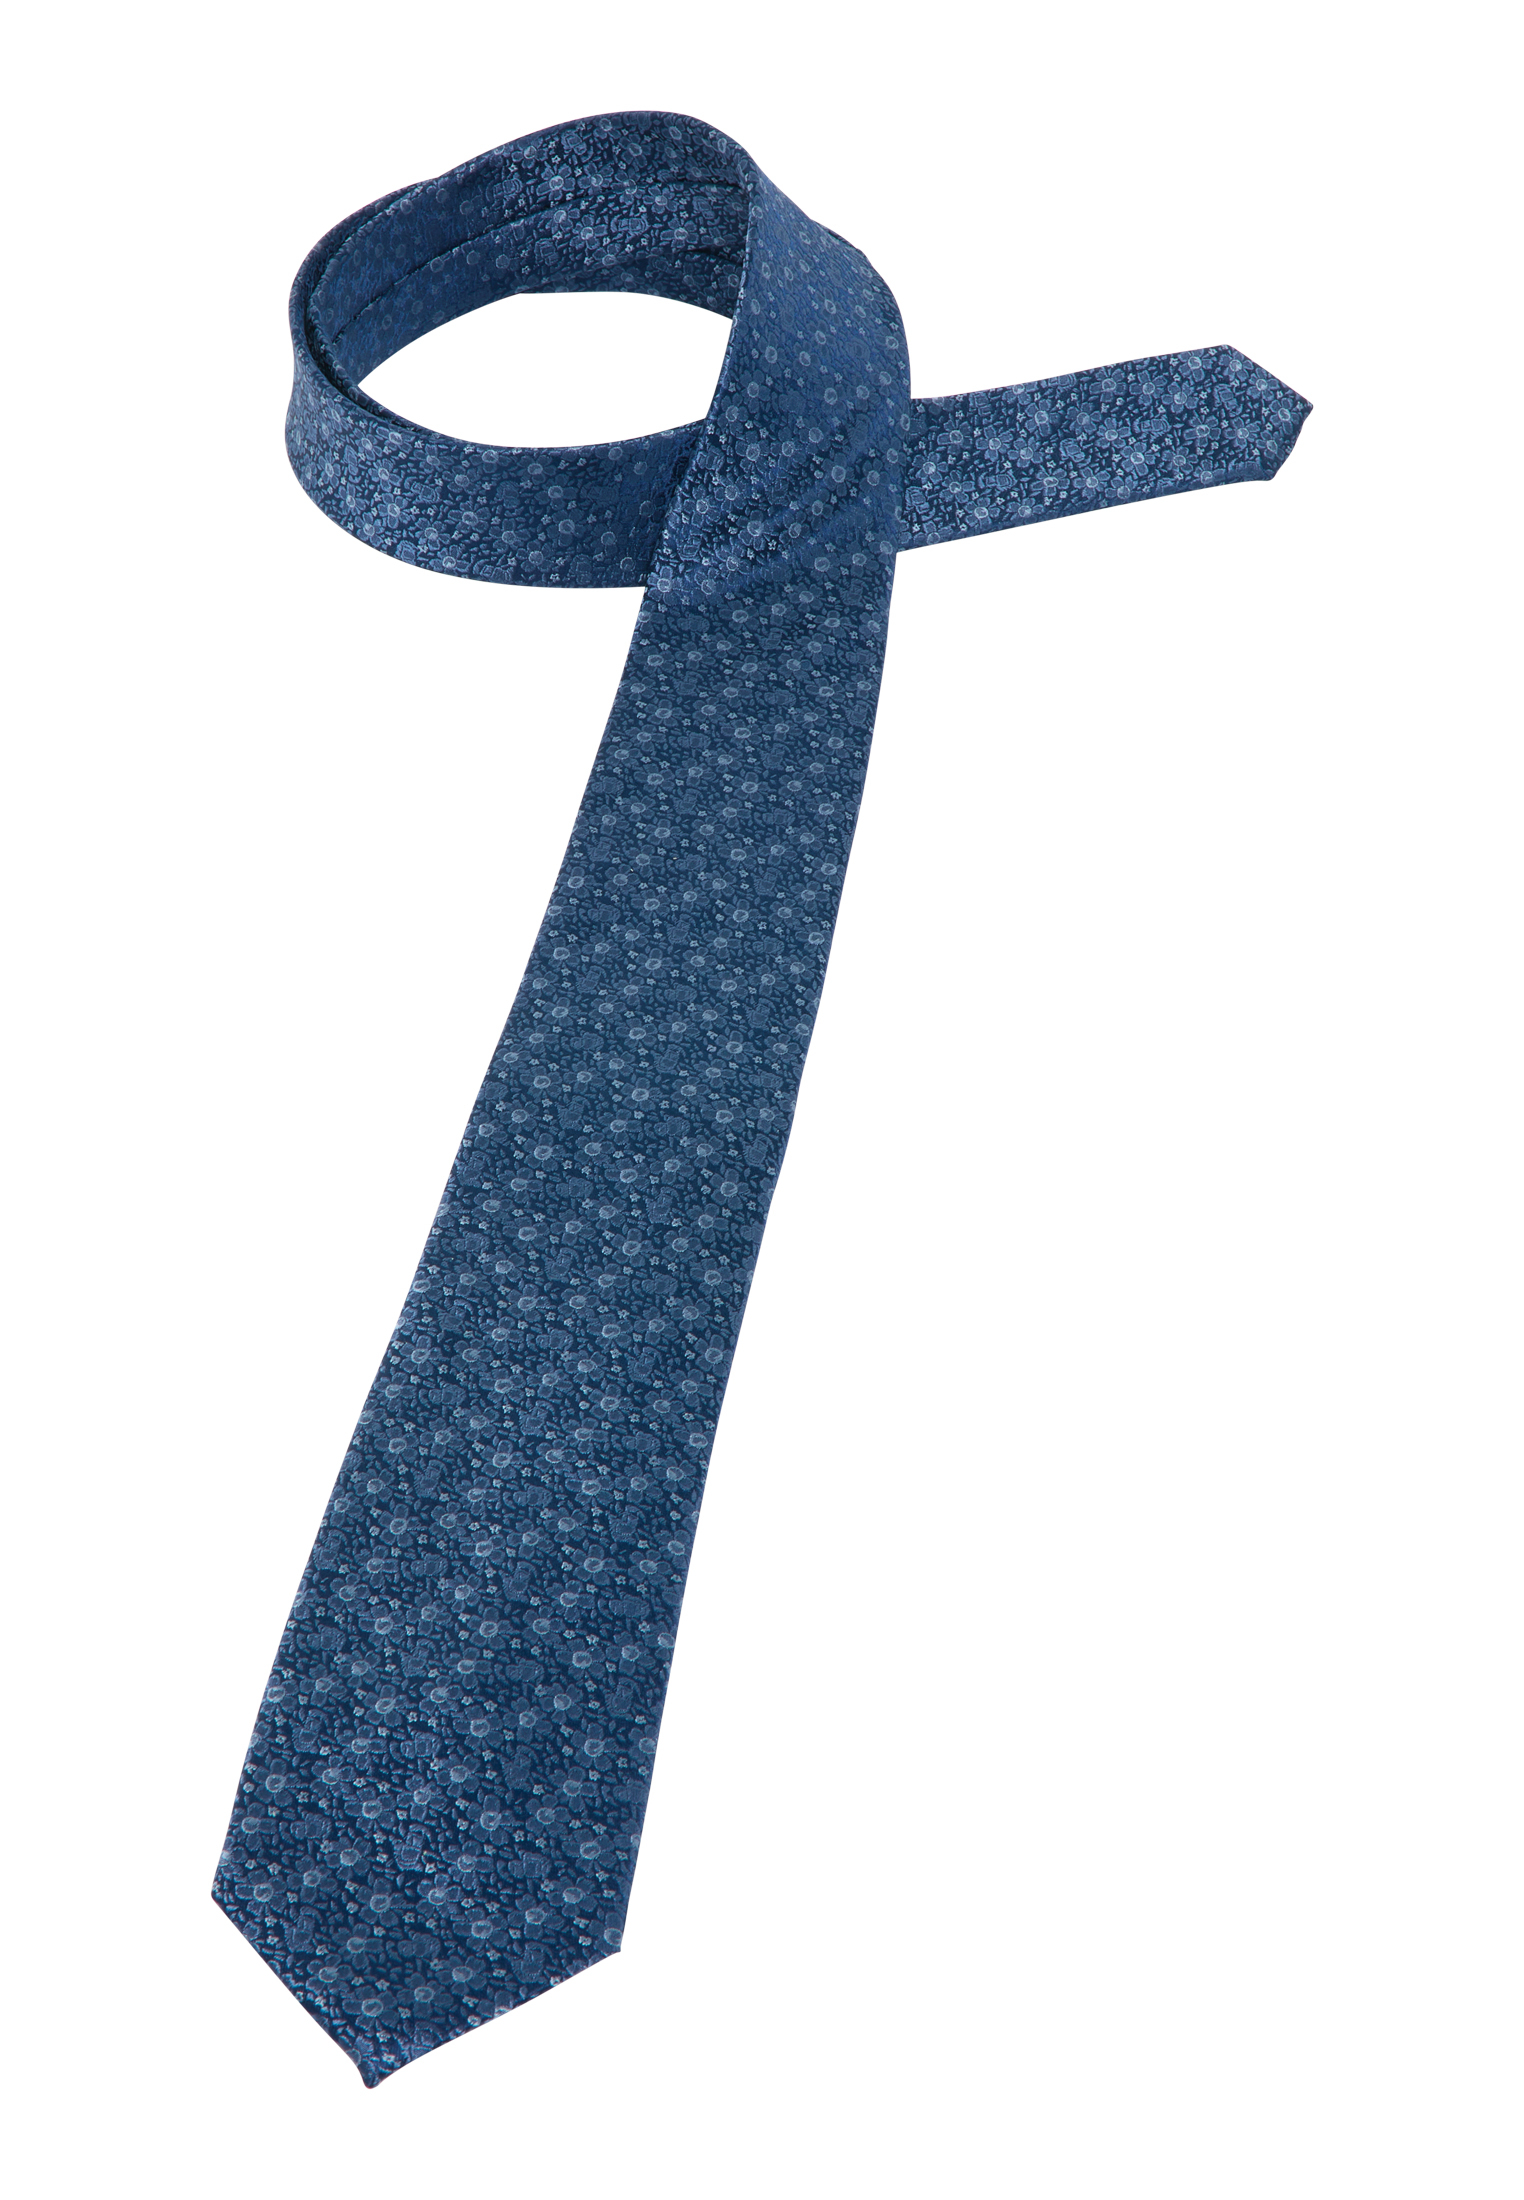 Krawatte in | 142 blau | 1AC01877-01-41-142 | gemustert blau